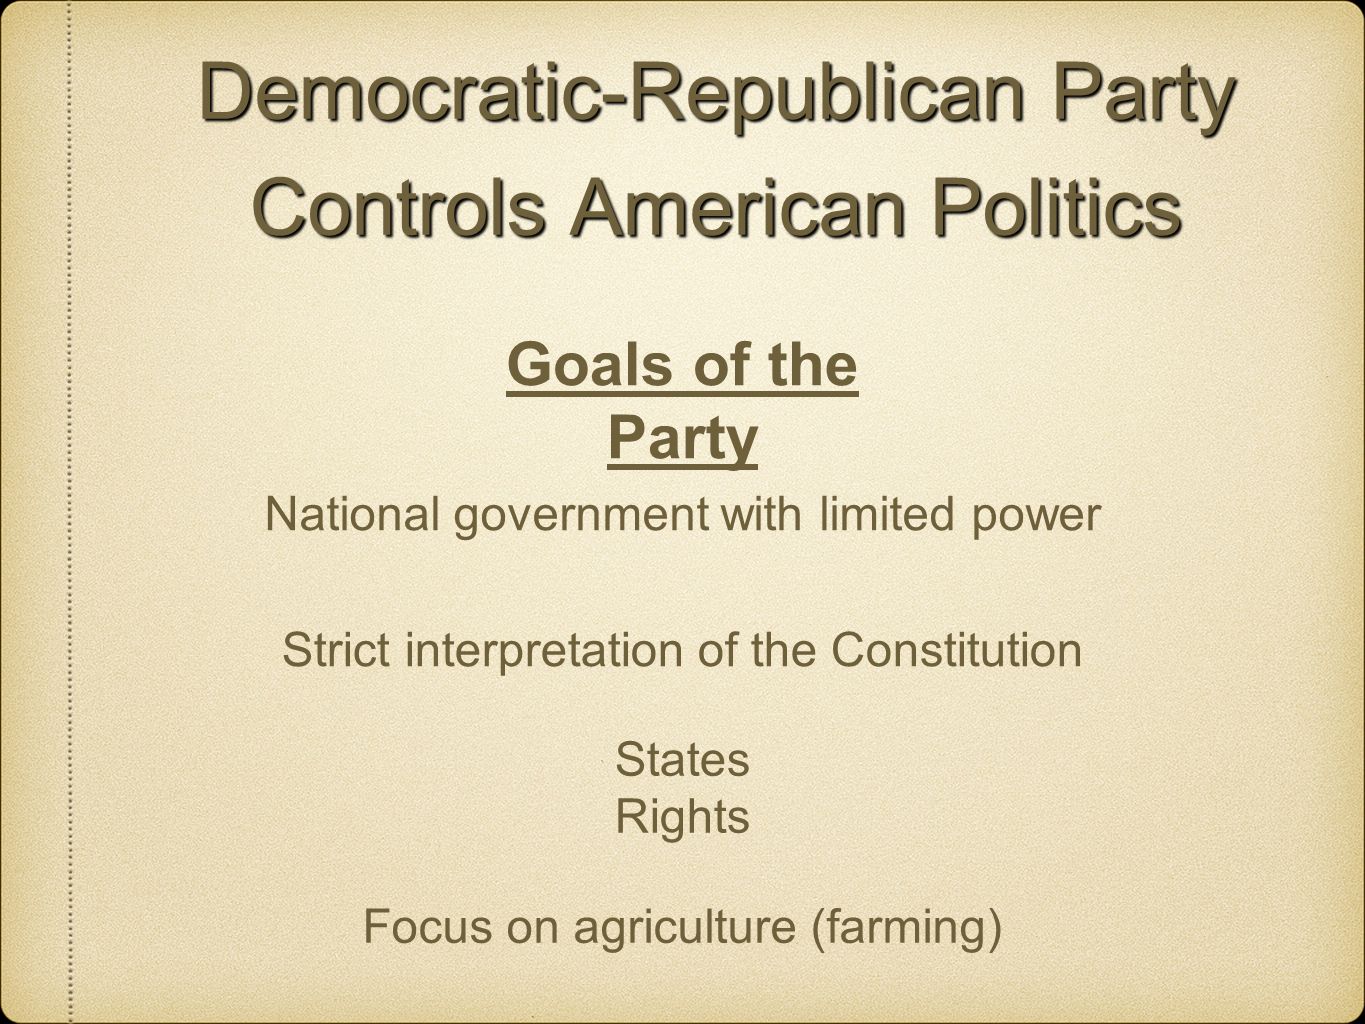 Democratic-Republican Party Controls American Politics